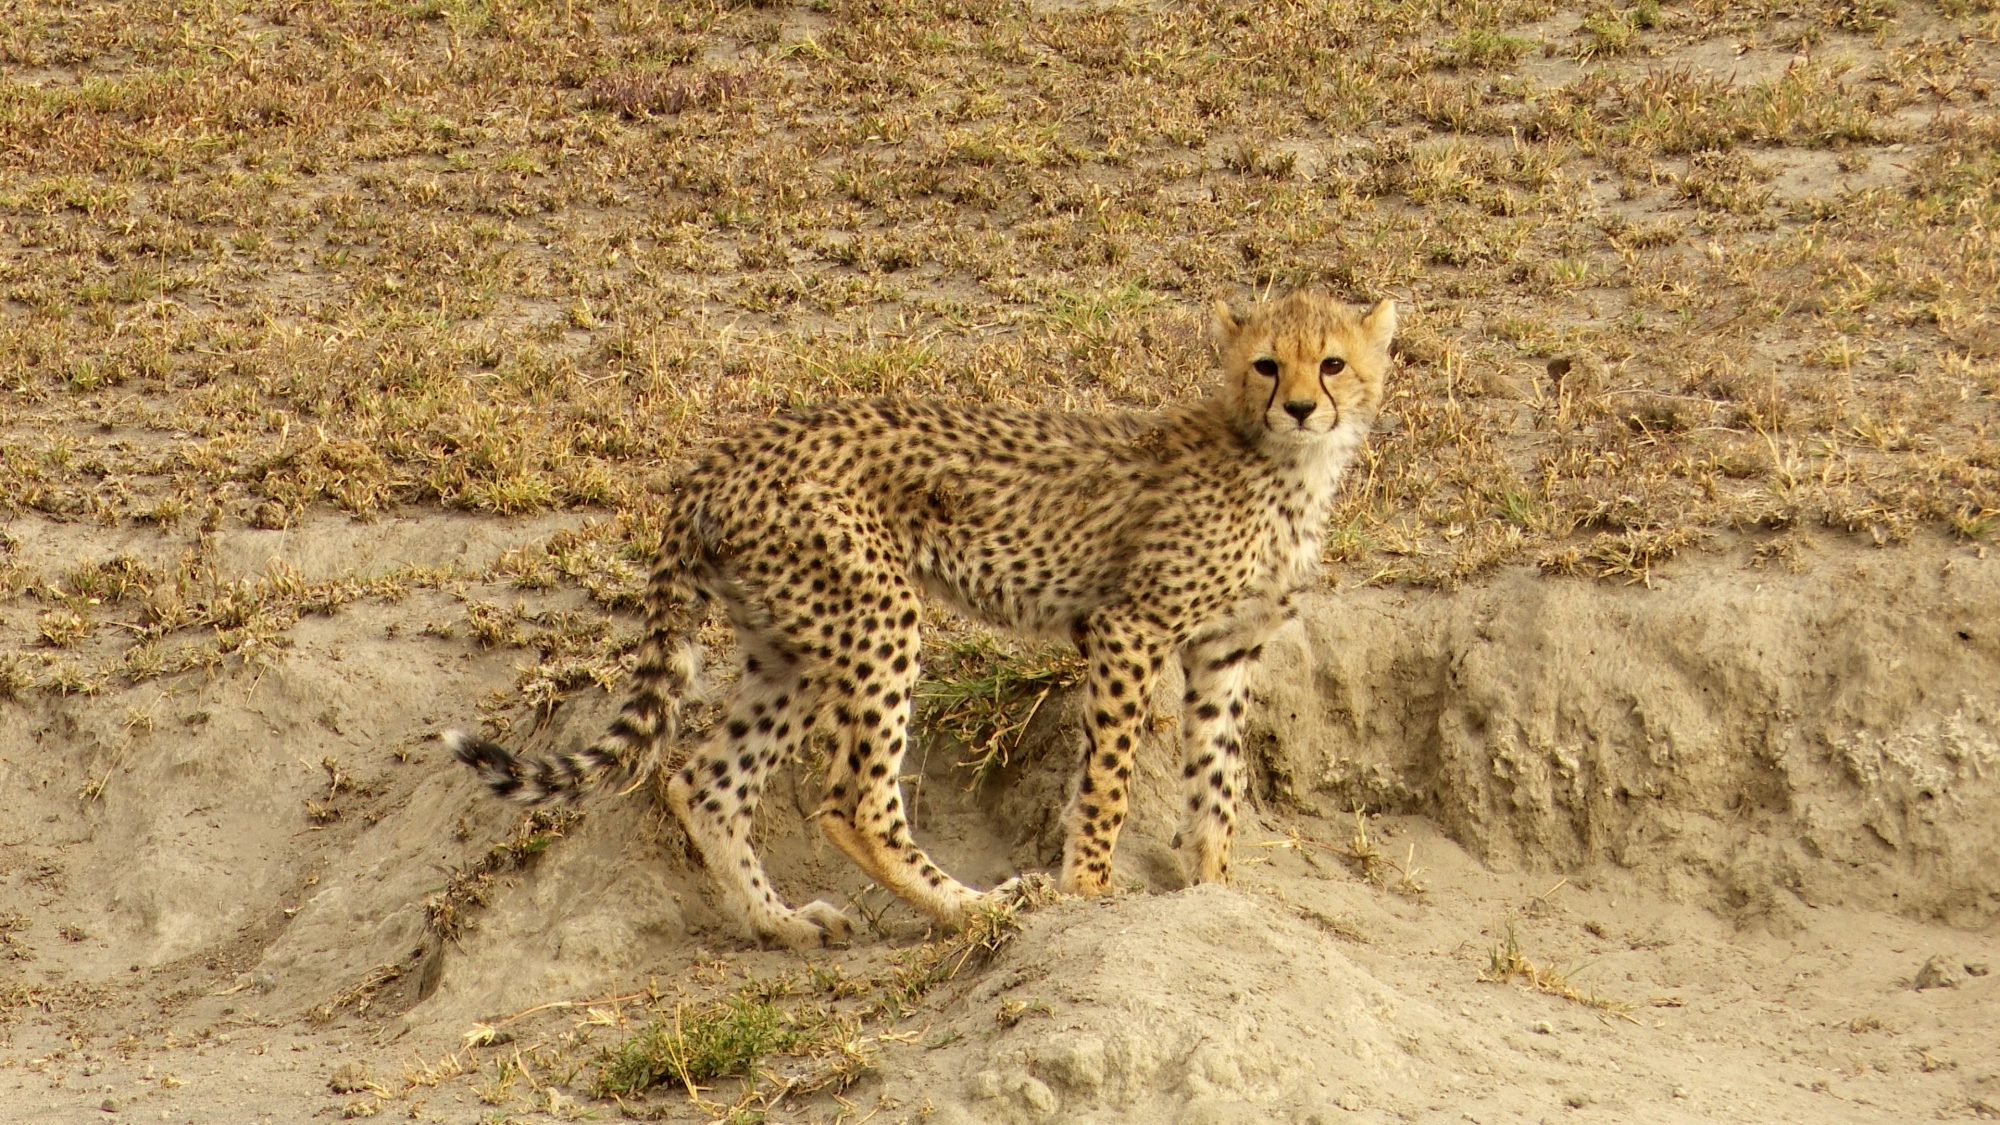 Cheetah cubs at play – Tanzania, 2019